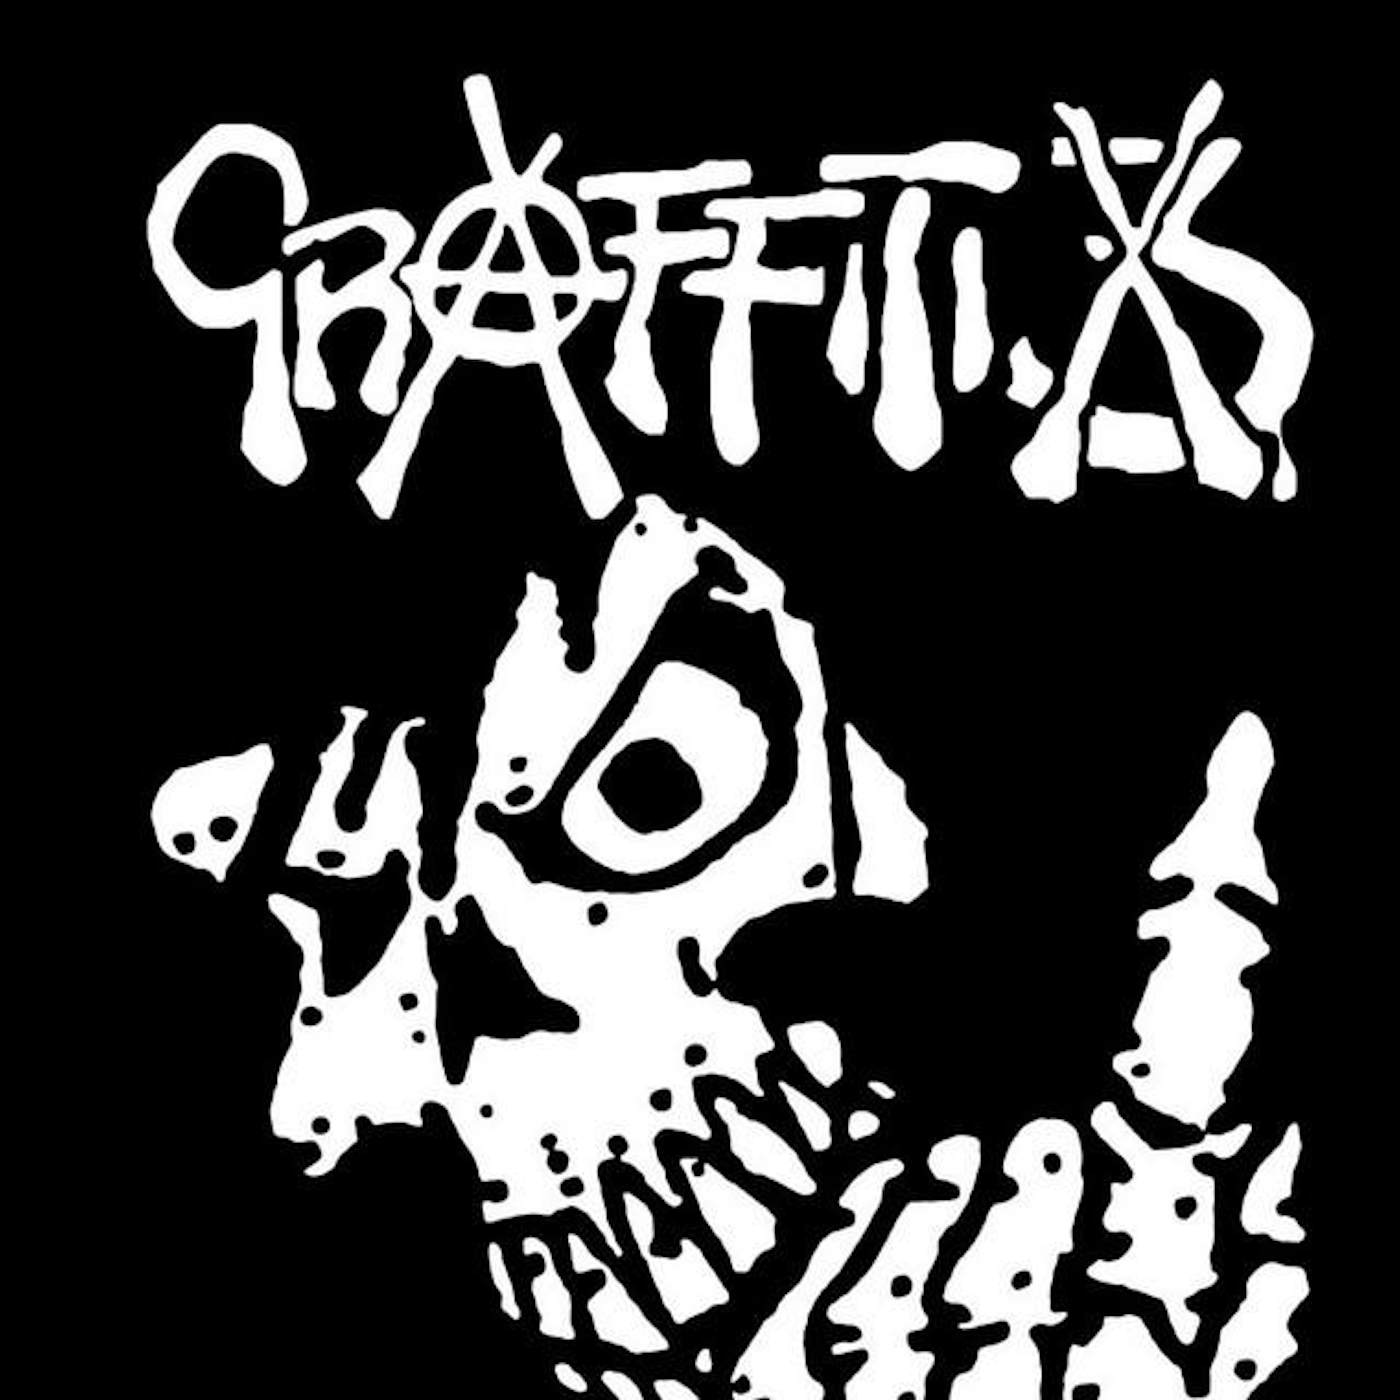 Graffiti 3X